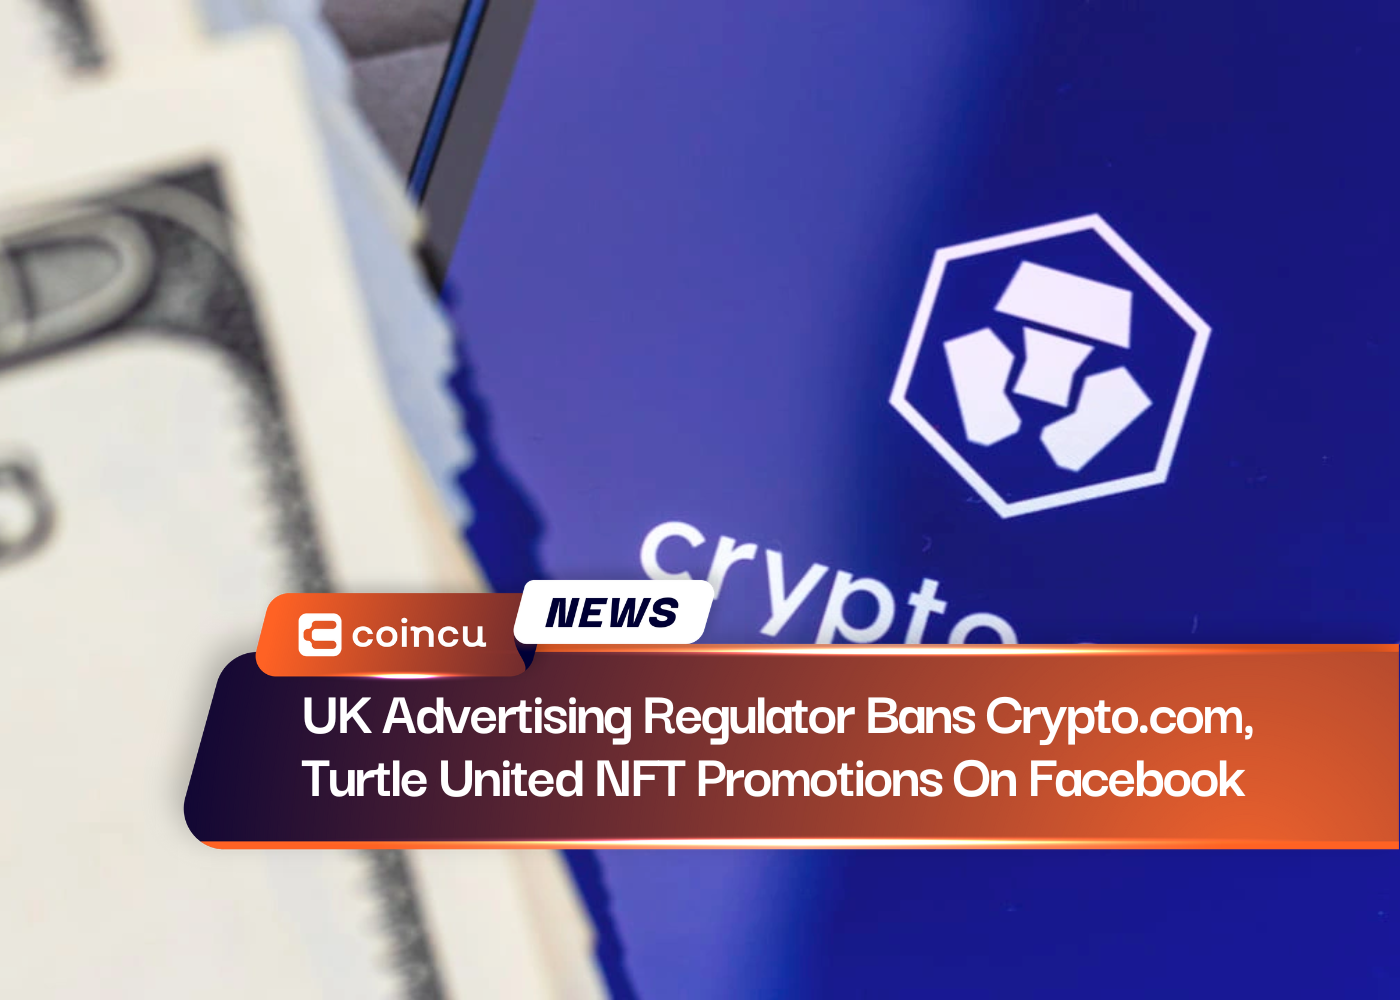 英国の広告規制当局がCrypto.comとTurtle UnitedのFacebookでのNFTプロモーションを禁止